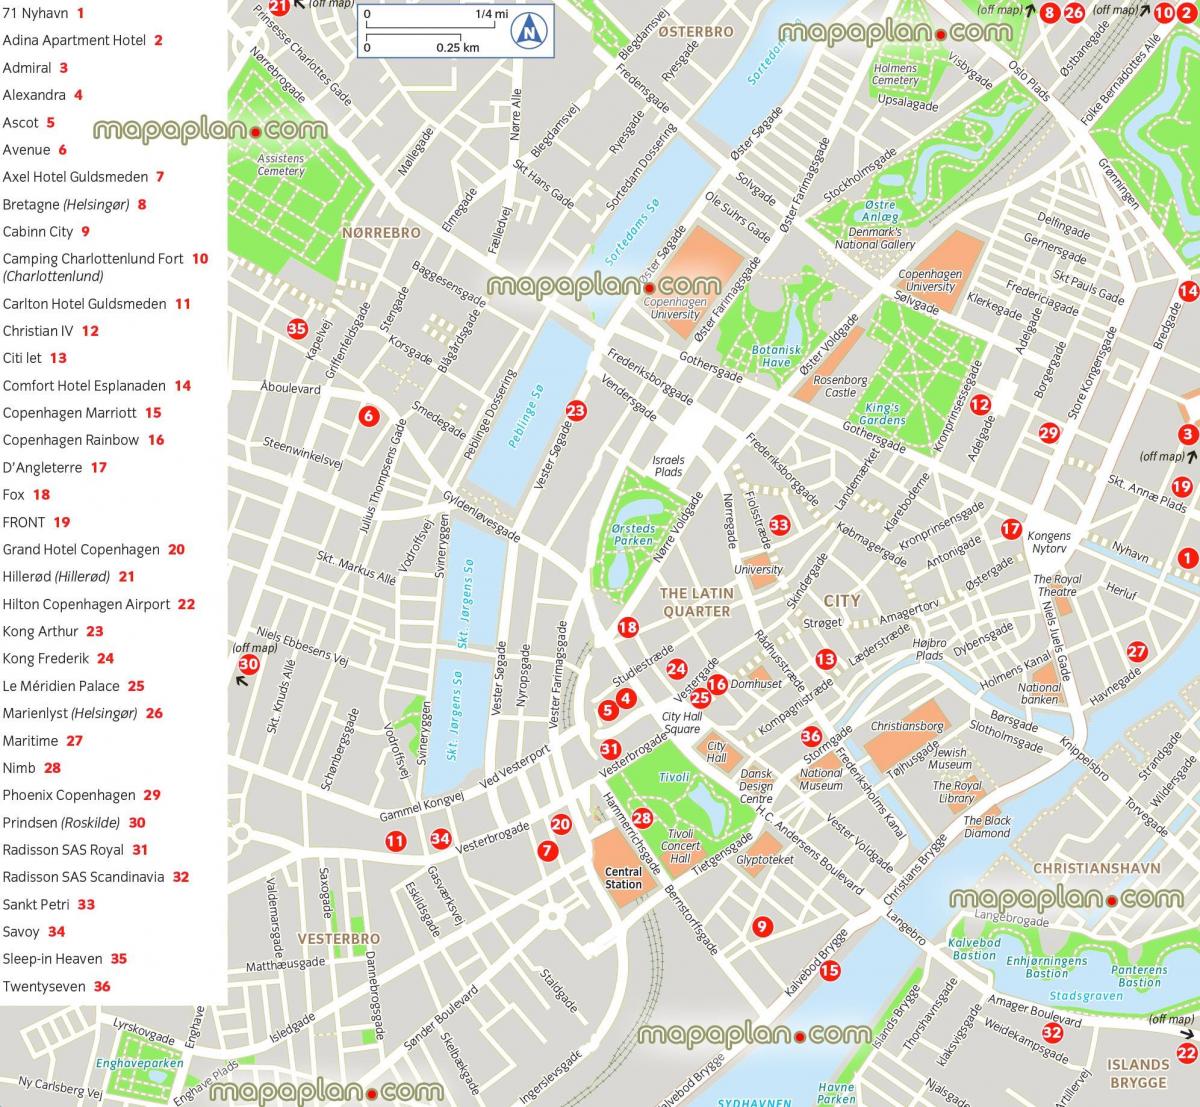 Mapa das atracções de Copenhaga